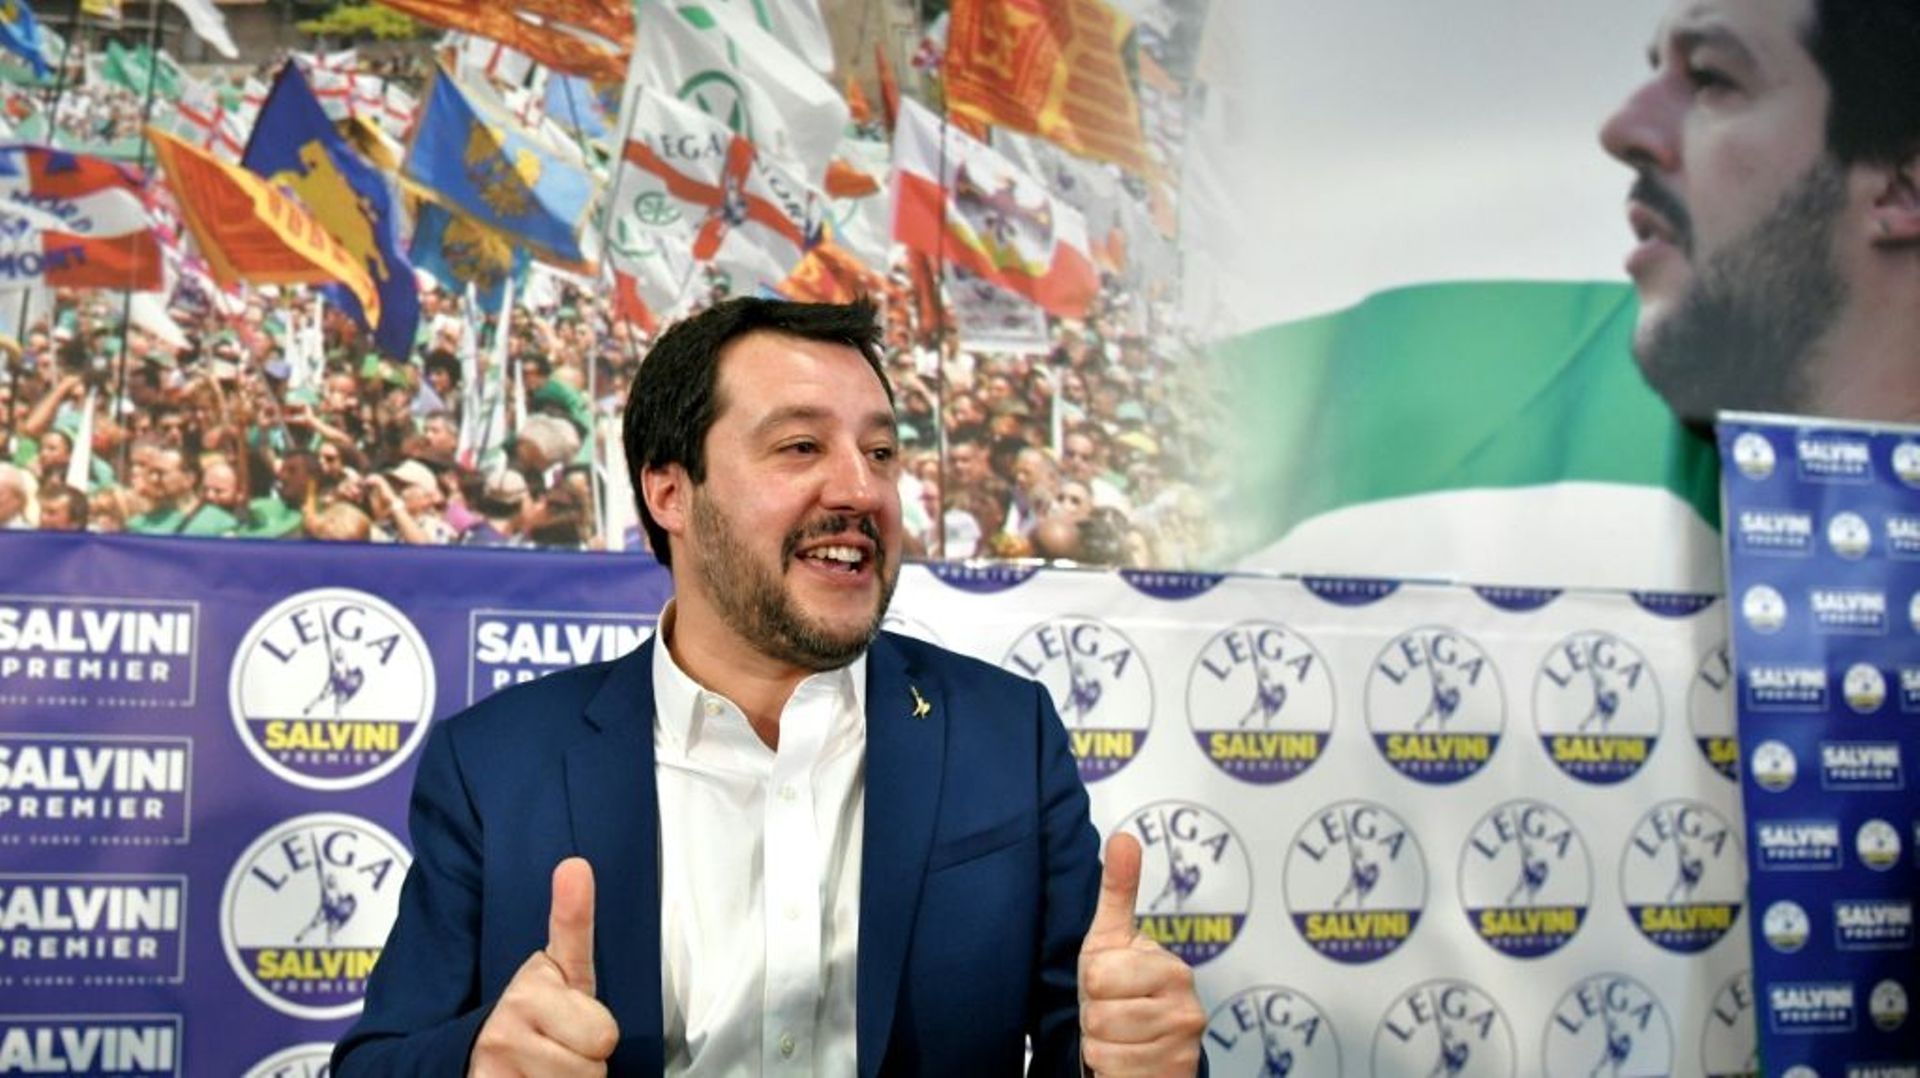 sans-majorite-absolue-le-parlement-italien-doit-elire-ses-presidents